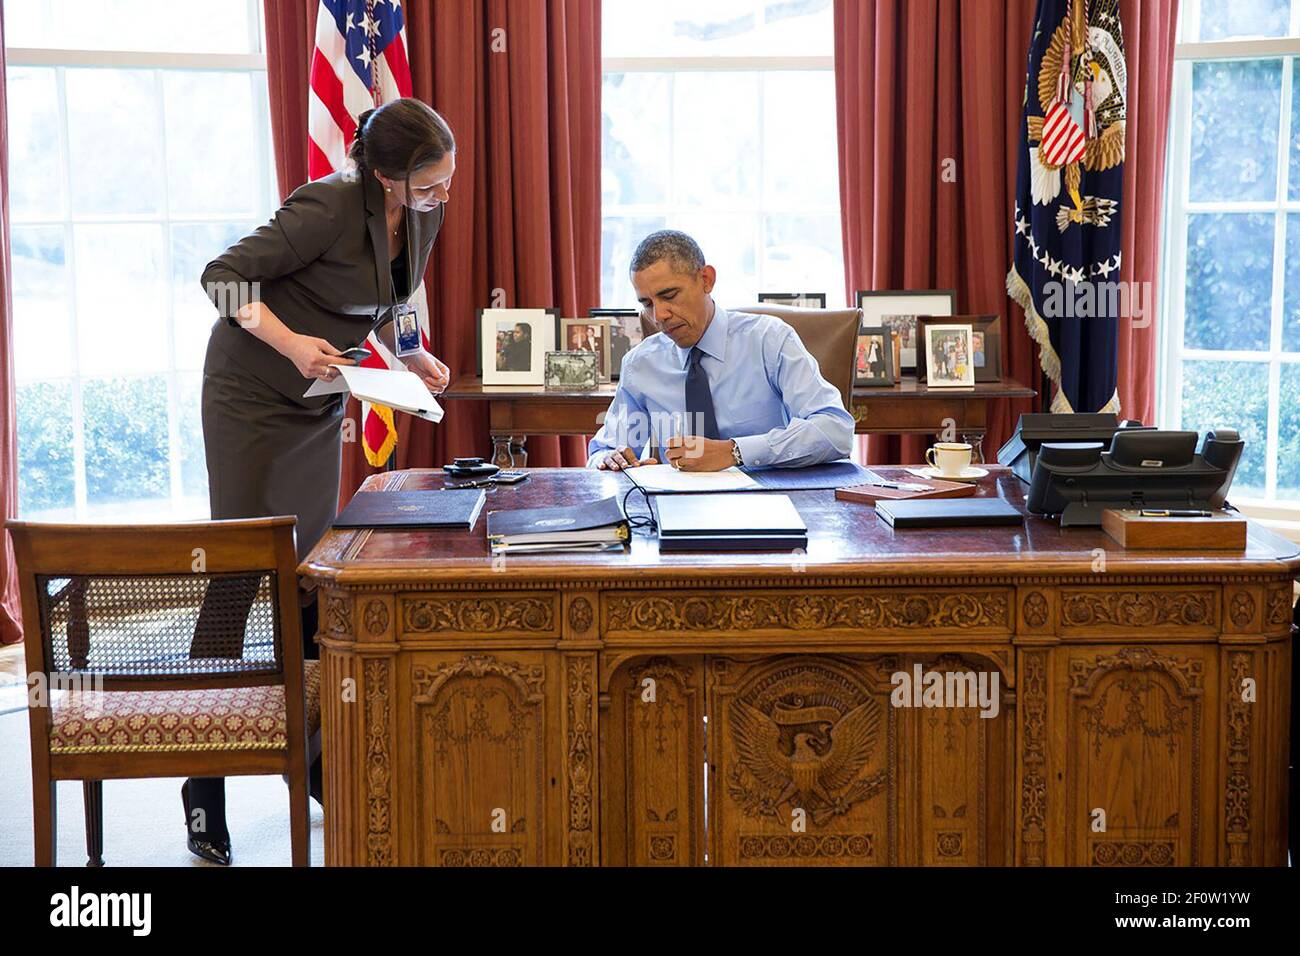 Präsident Barack Obama unterzeichnet zusammen mit dem Stabssekretär Joani Walsh Gesetzesvorlagen im Oval Office, 21. März 2014. Stockfoto